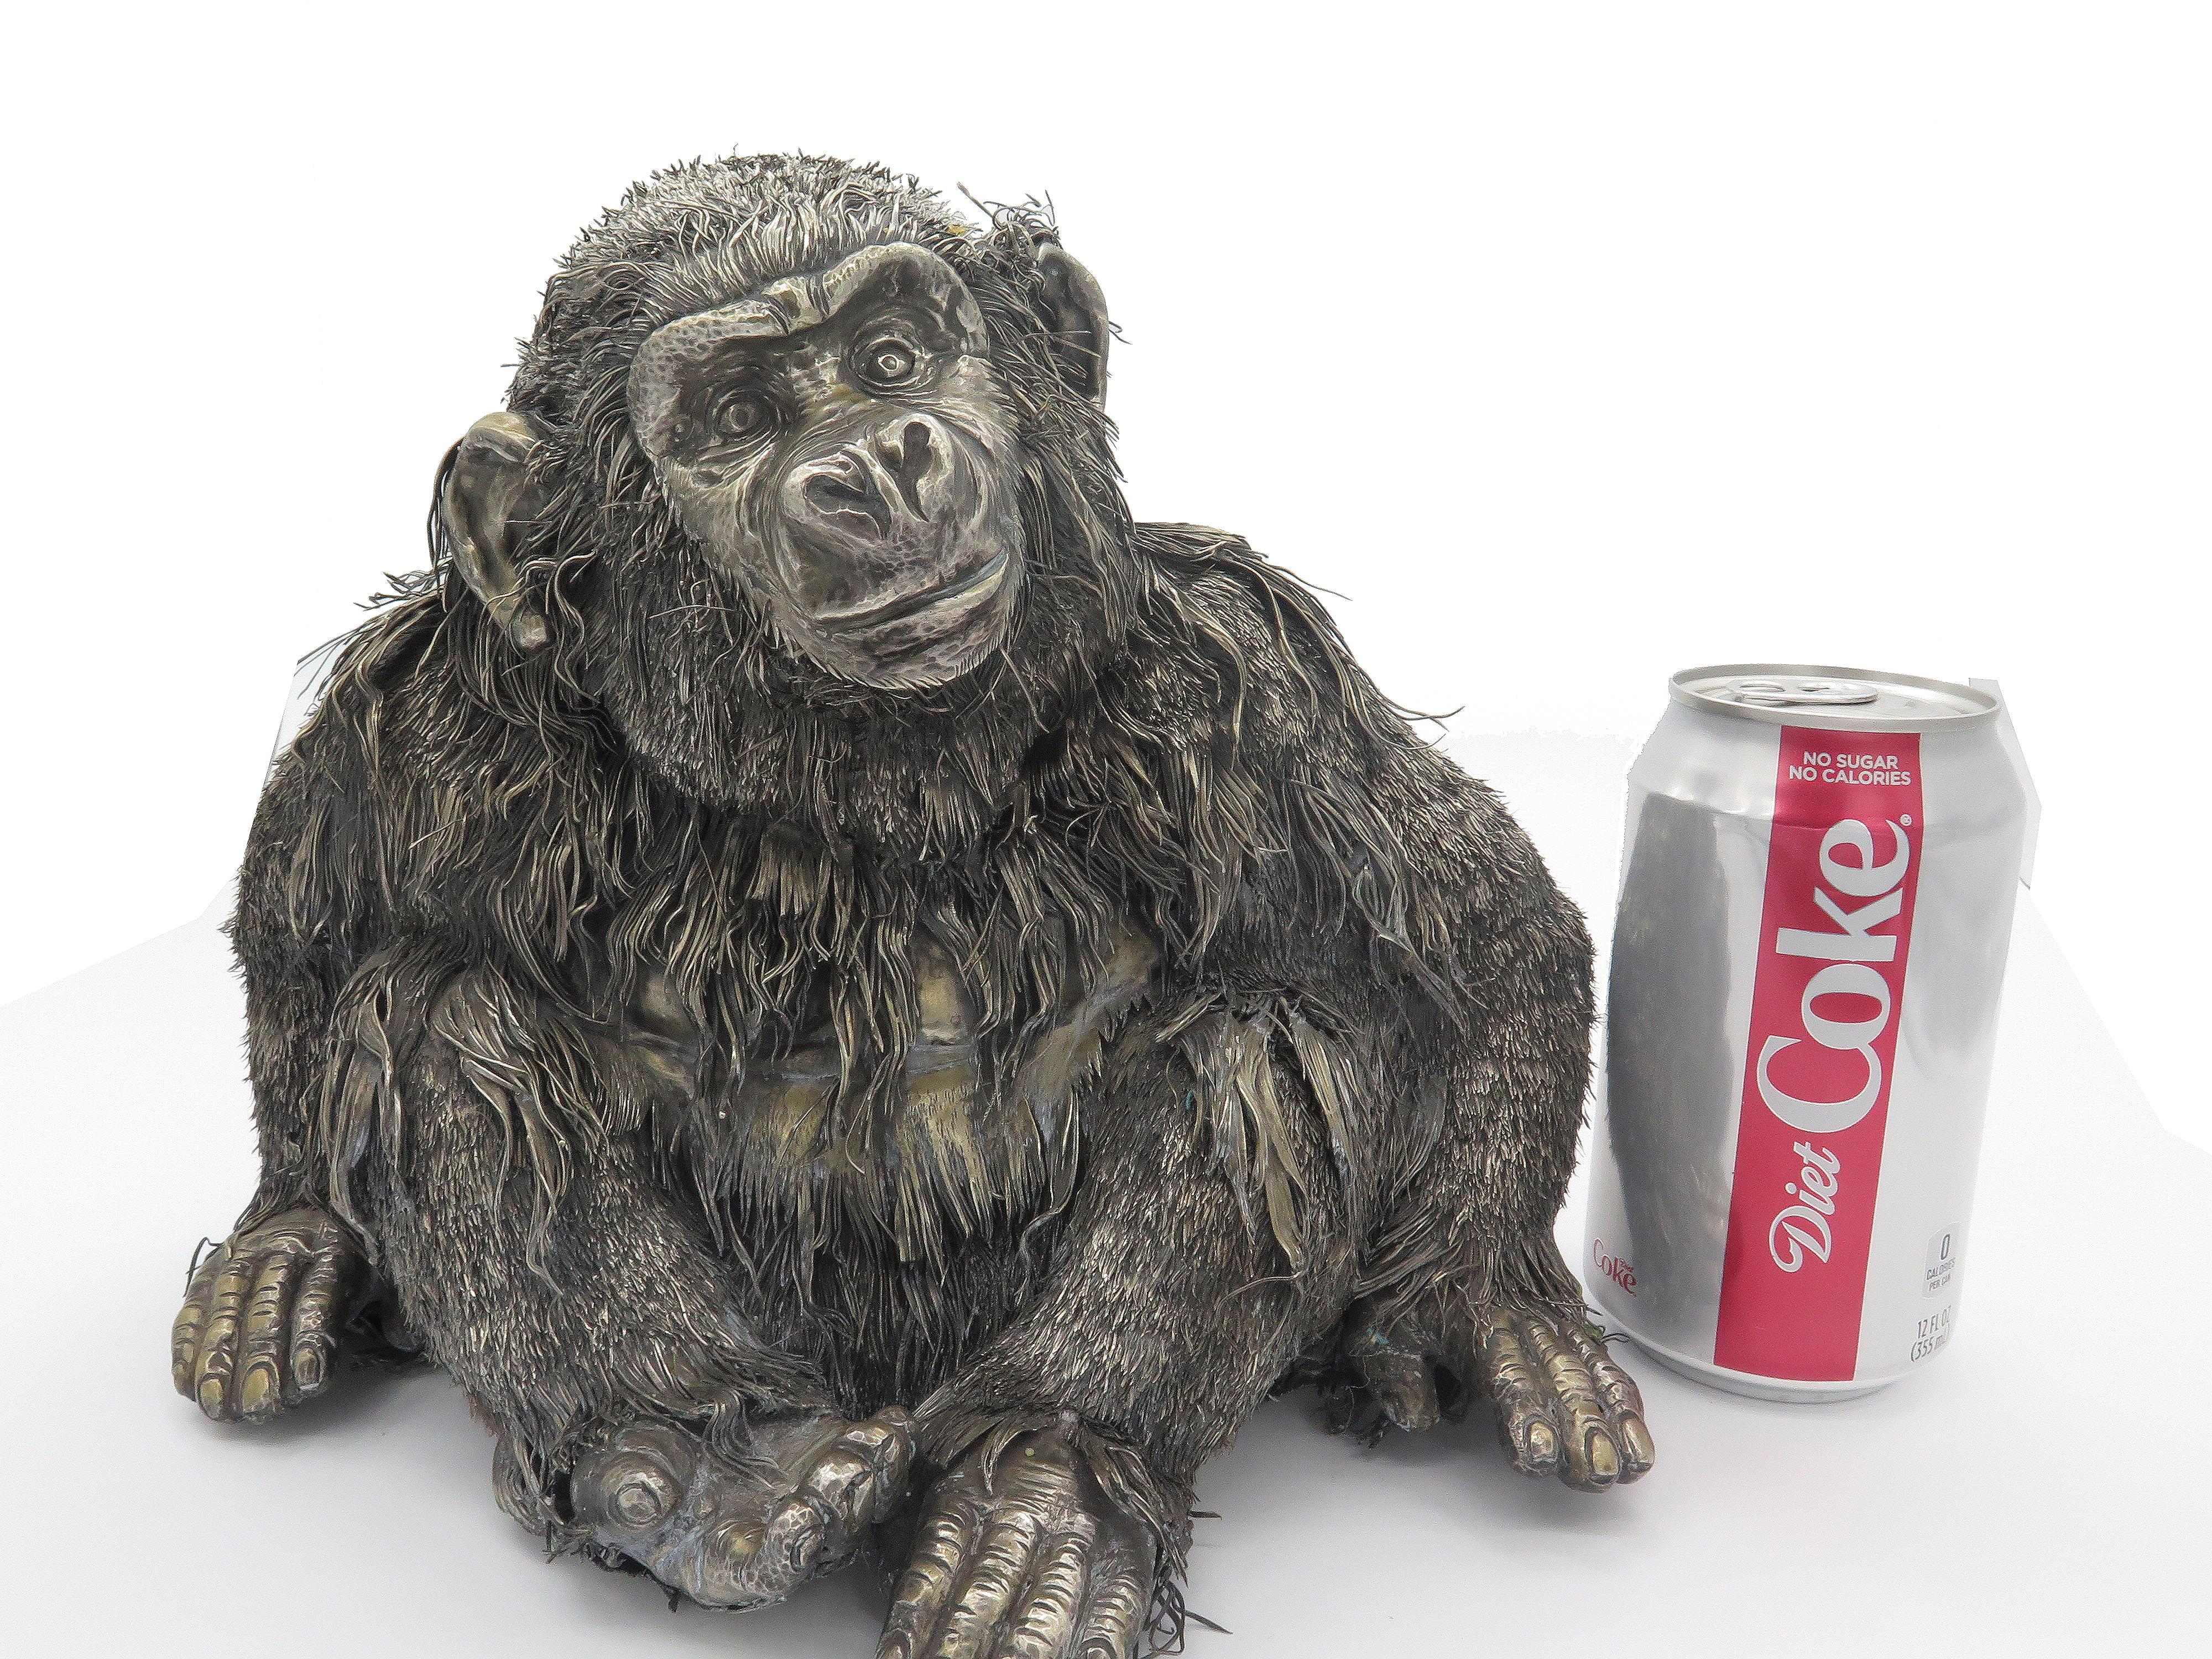 
Une création de Mario Buccellati, un singe italien en argent rare et exceptionnel.  Modélisé de façon réaliste dans une position assise, ce beau singe regarde avec curiosité le monde qui l'entoure.  Signé Buccellati.  Mesures : Hauteur - 8,50